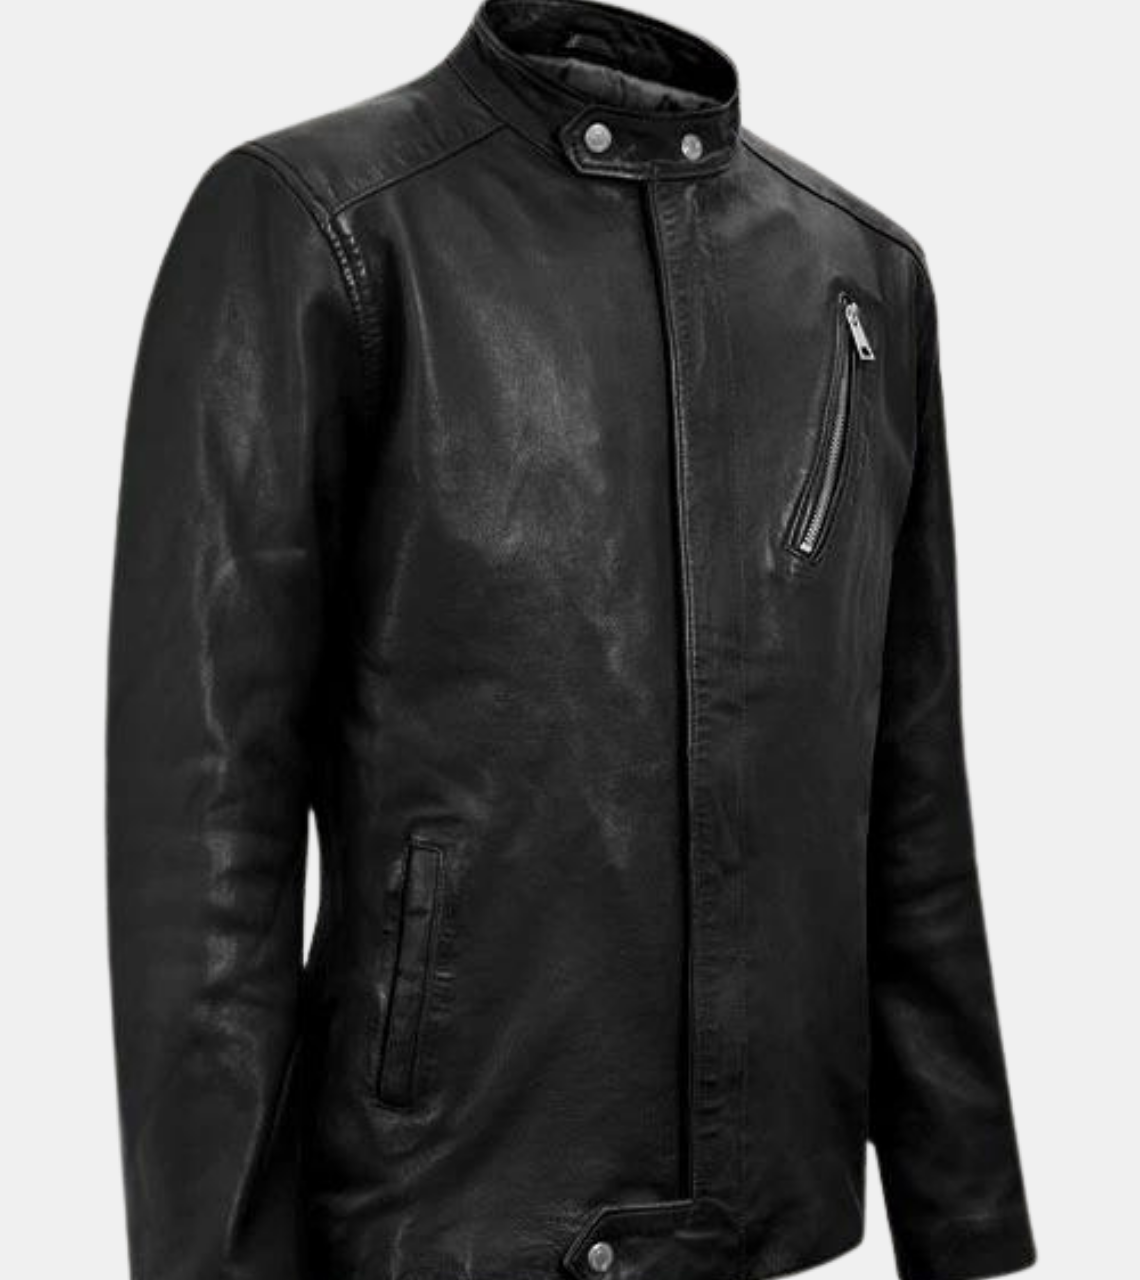  Black Biker's Leather Jacket